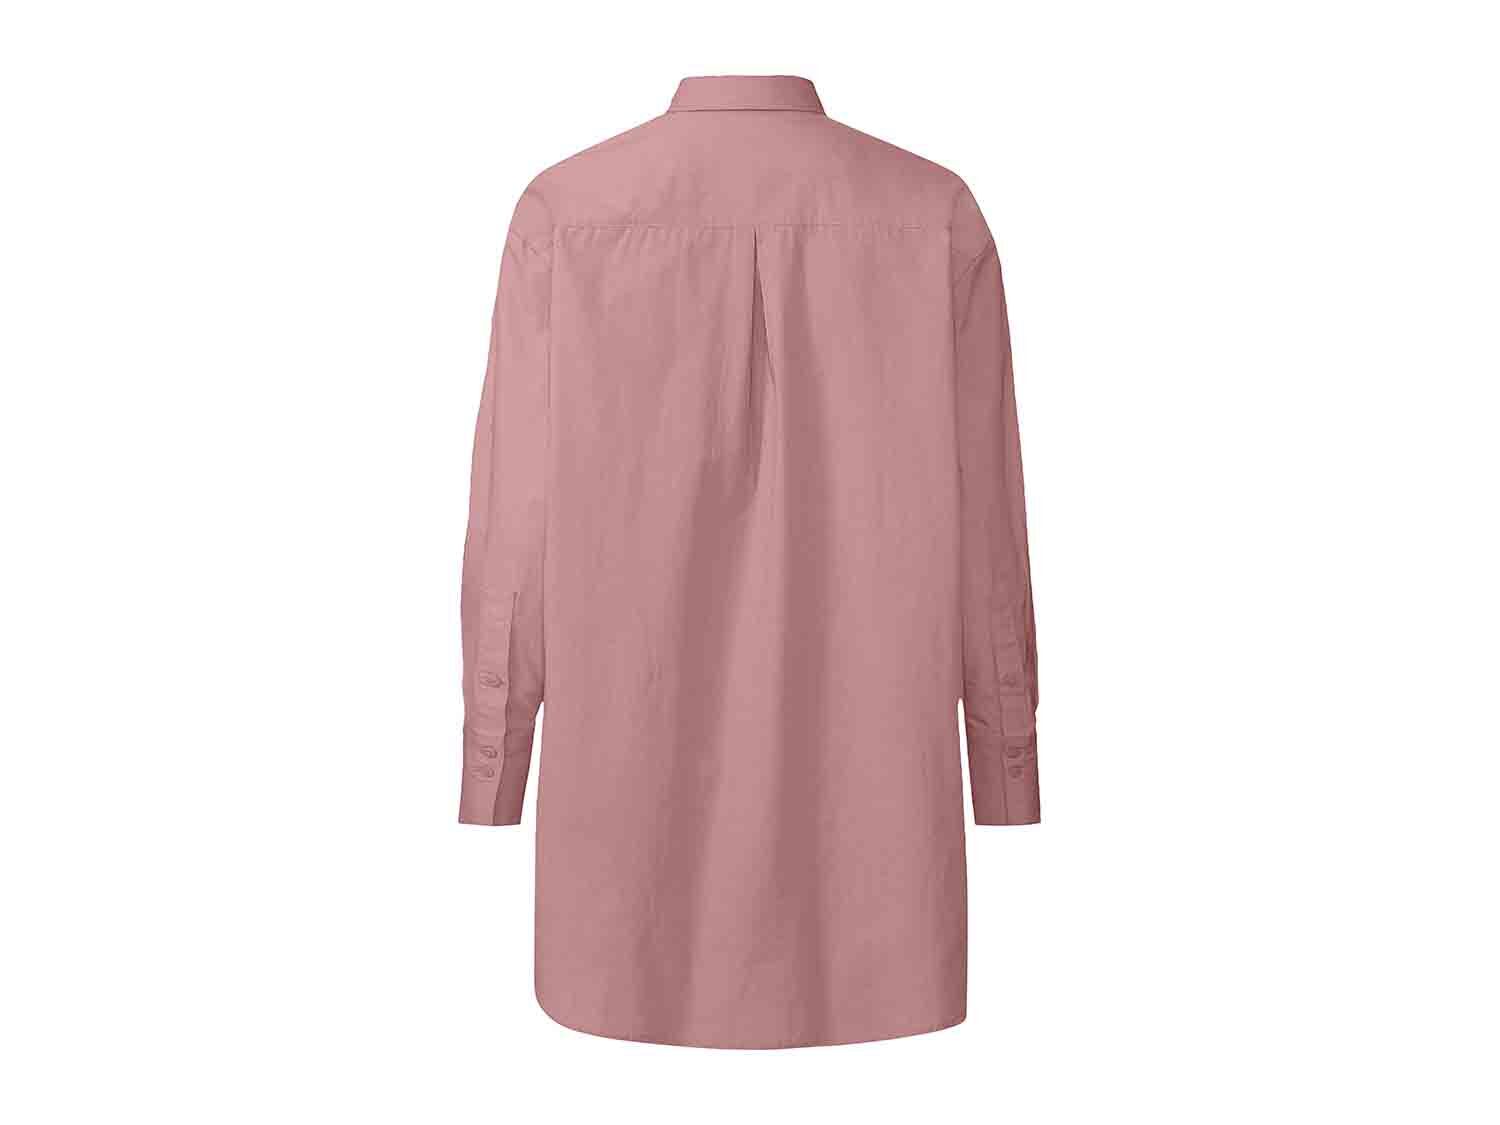 Blusa larga rosa para mujer